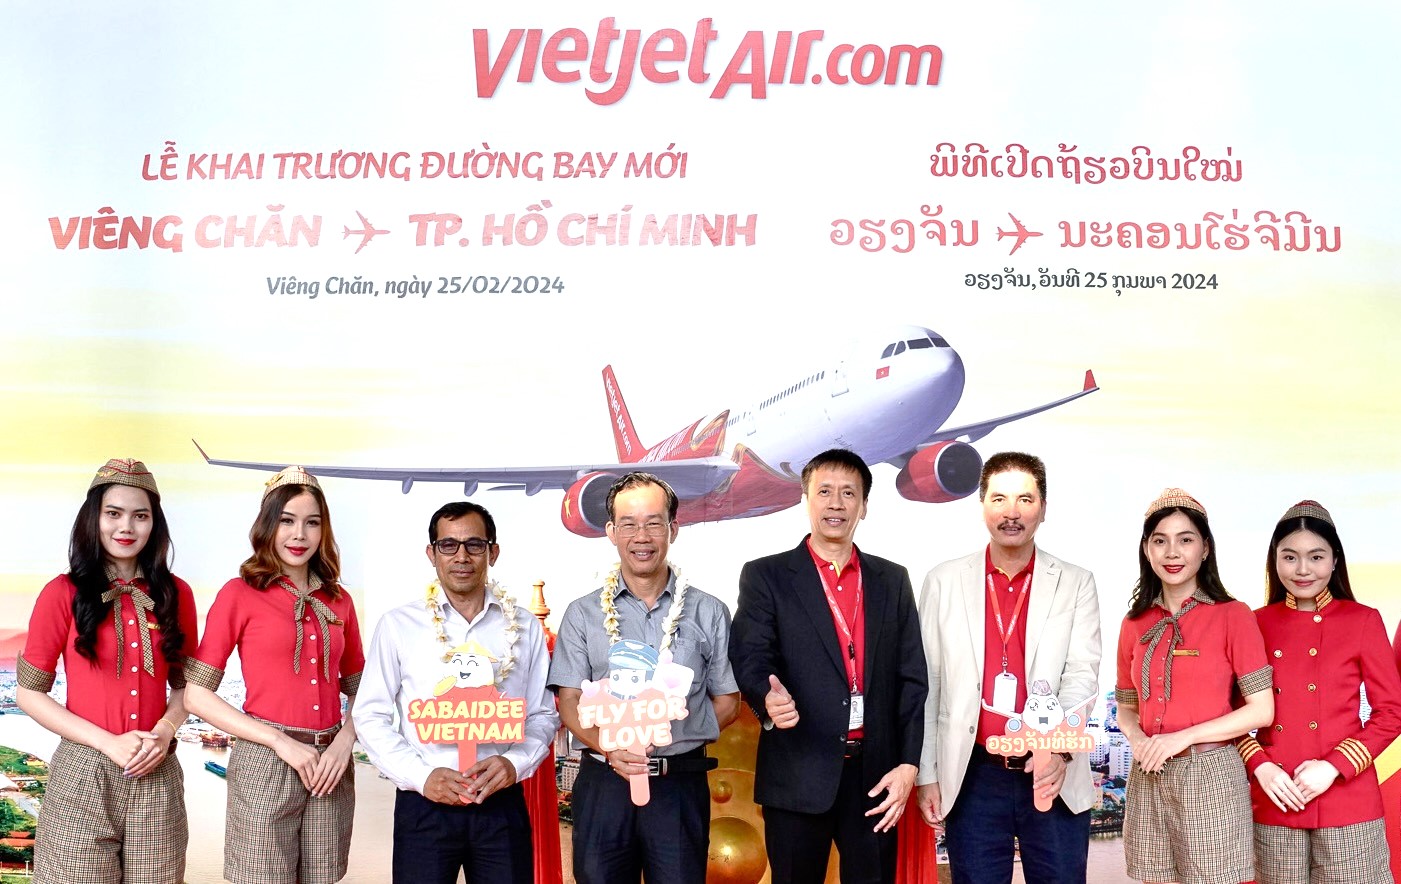 Năm mới rộn ràng, khám phá ngay Viêng Chăn, Lào với đường bay mới của Vietjet - Ảnh 3.